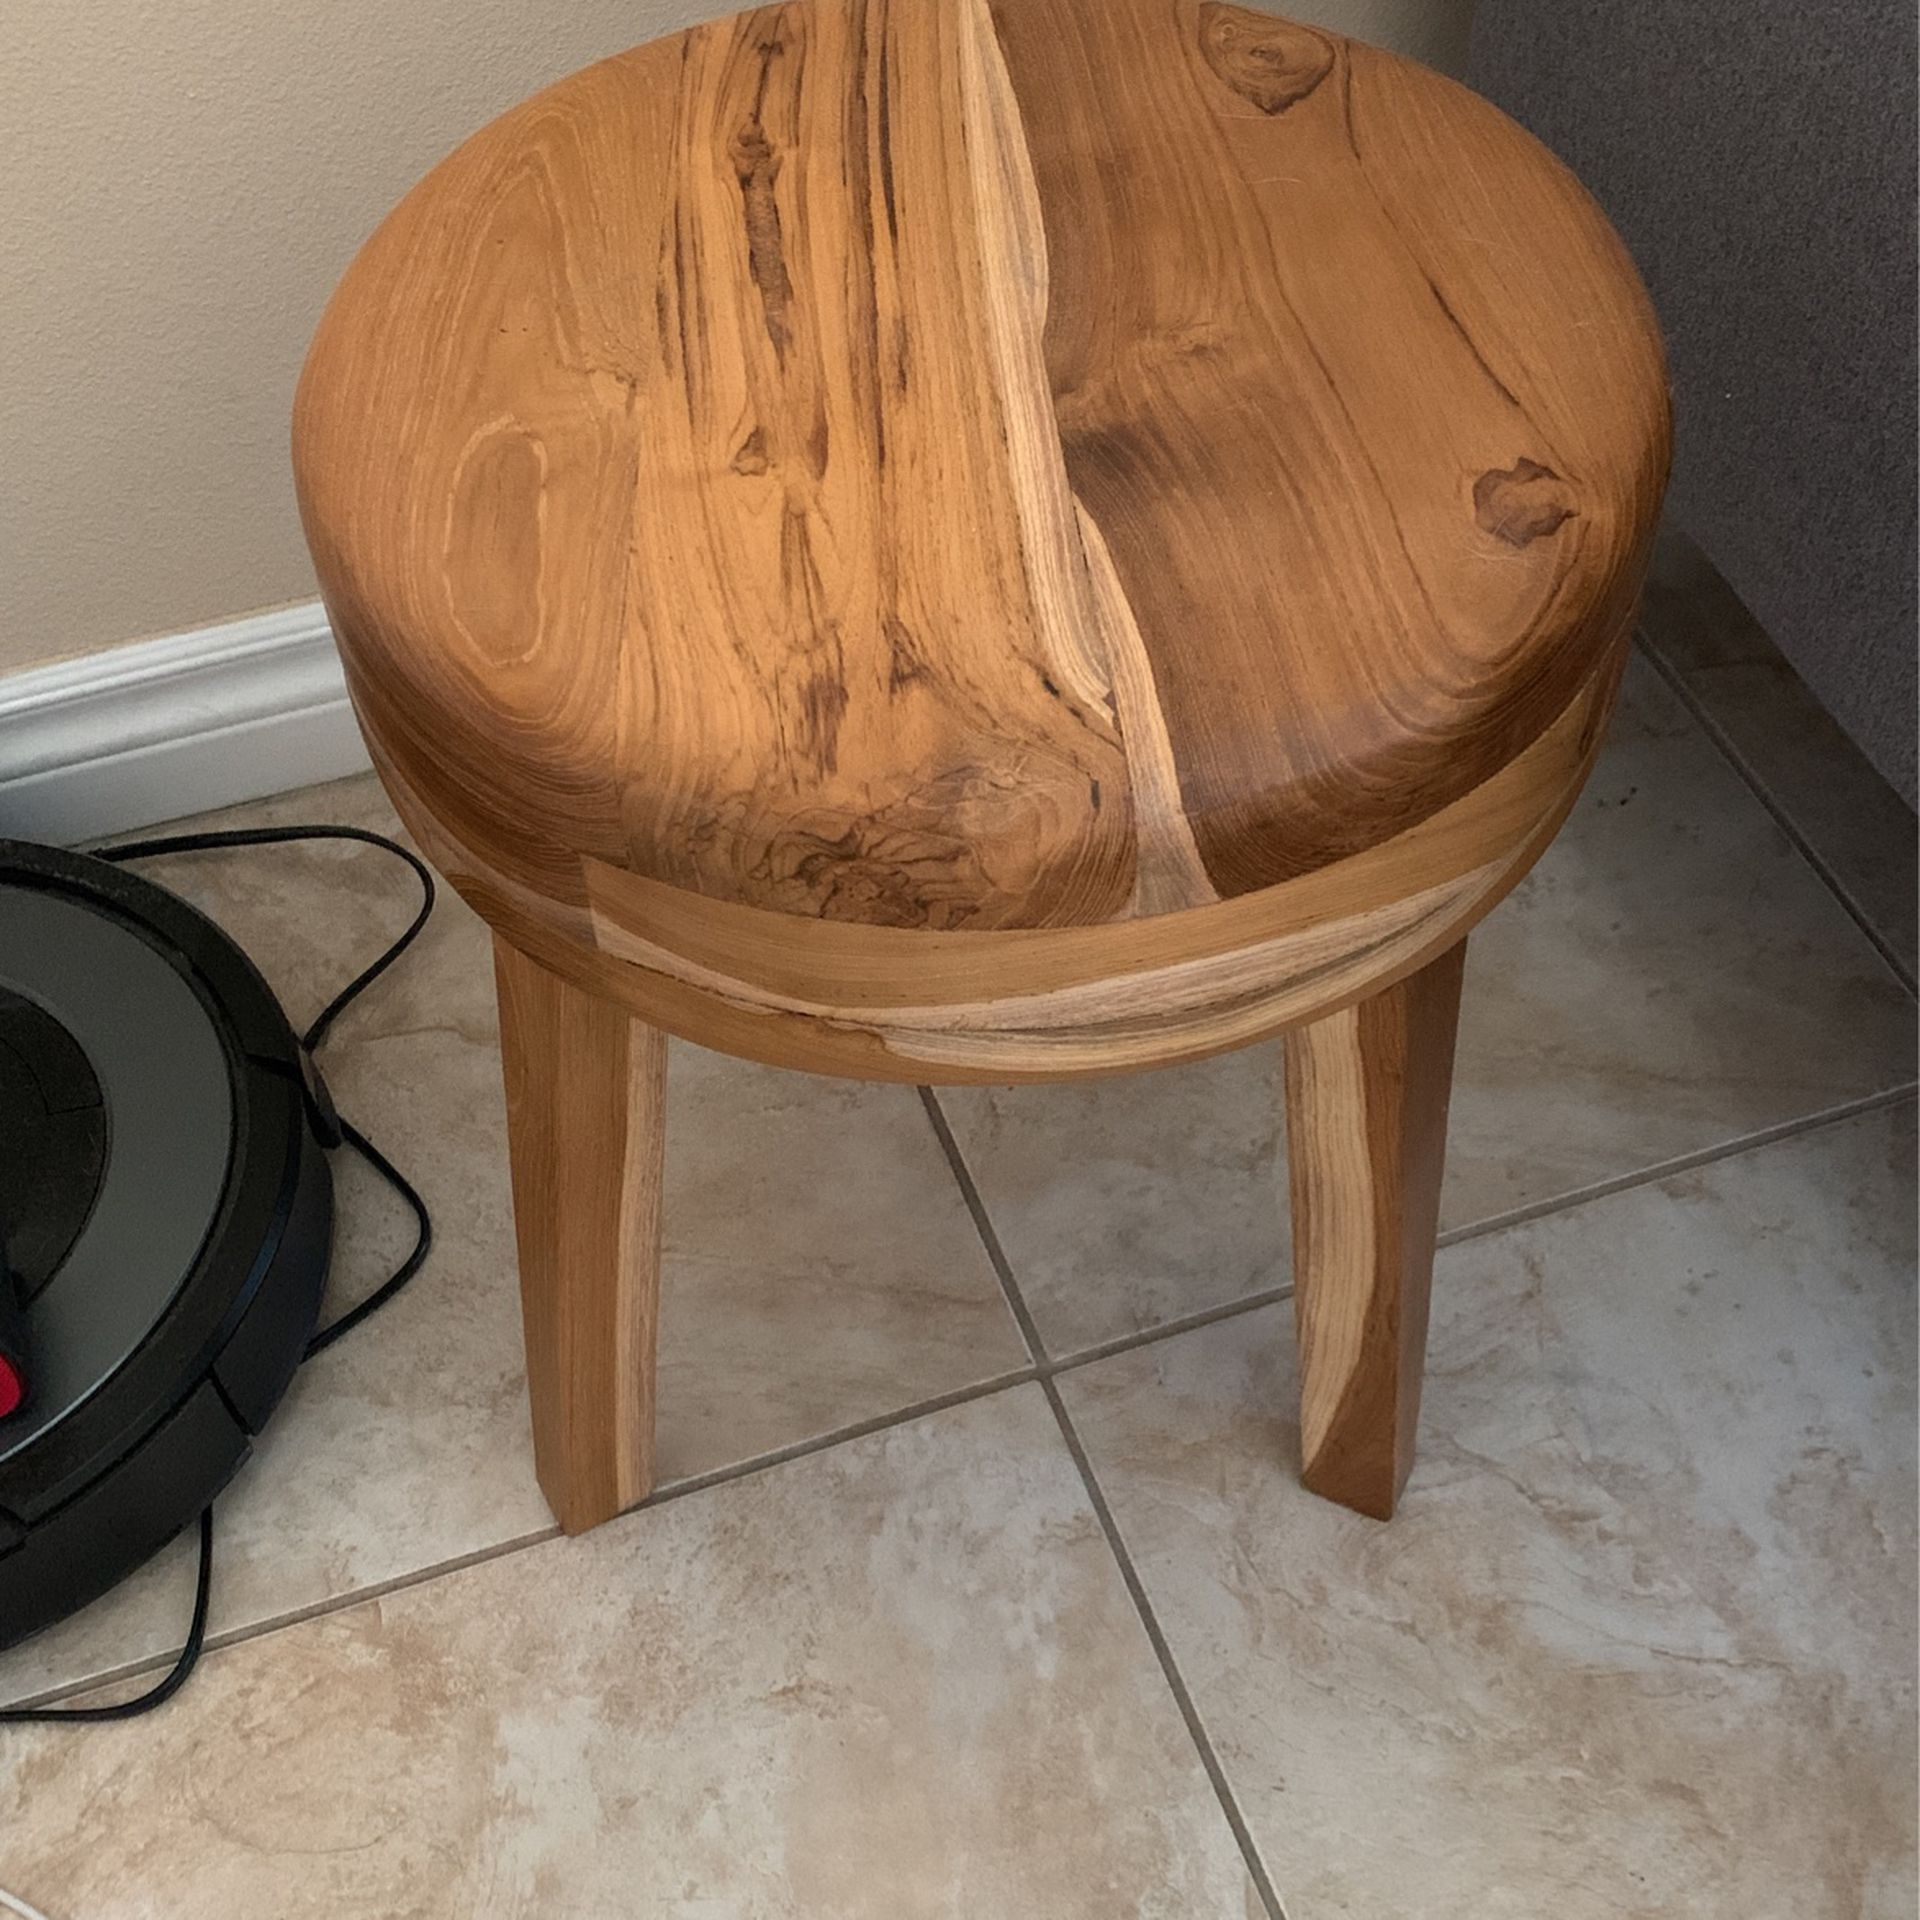 Unique Wooden Stool